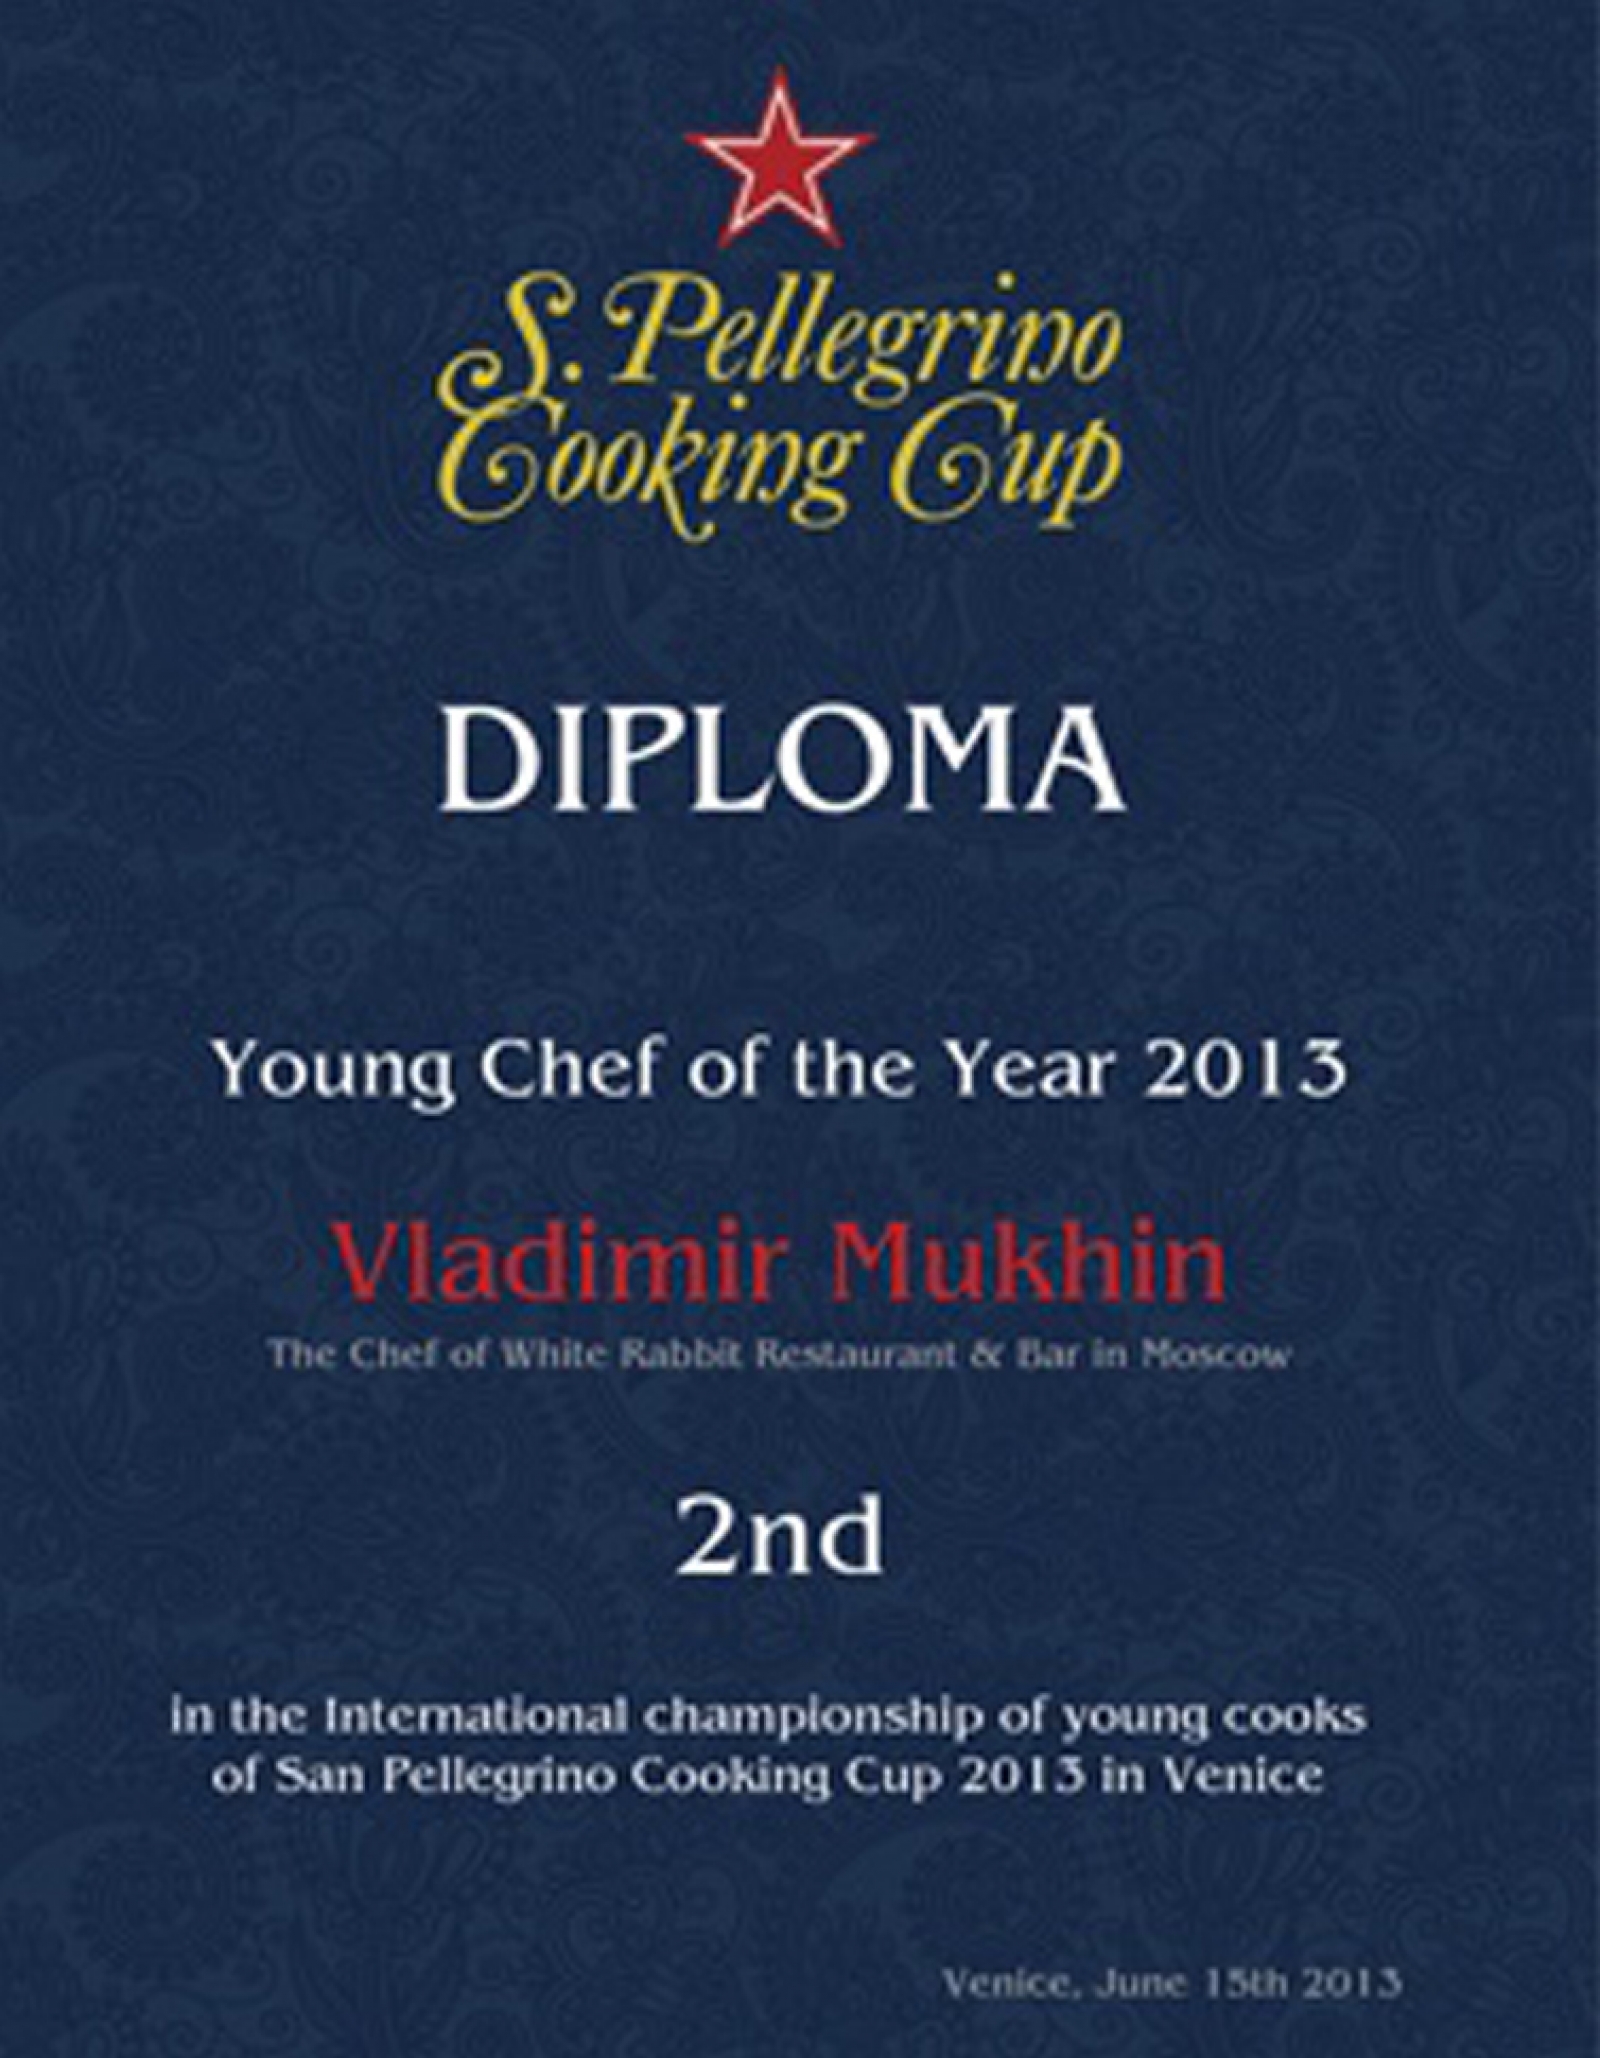 弗拉基米尔·穆欣——2013年圣培露世界厨师大赛（S.Pellegrino Cooking Cup）亚军